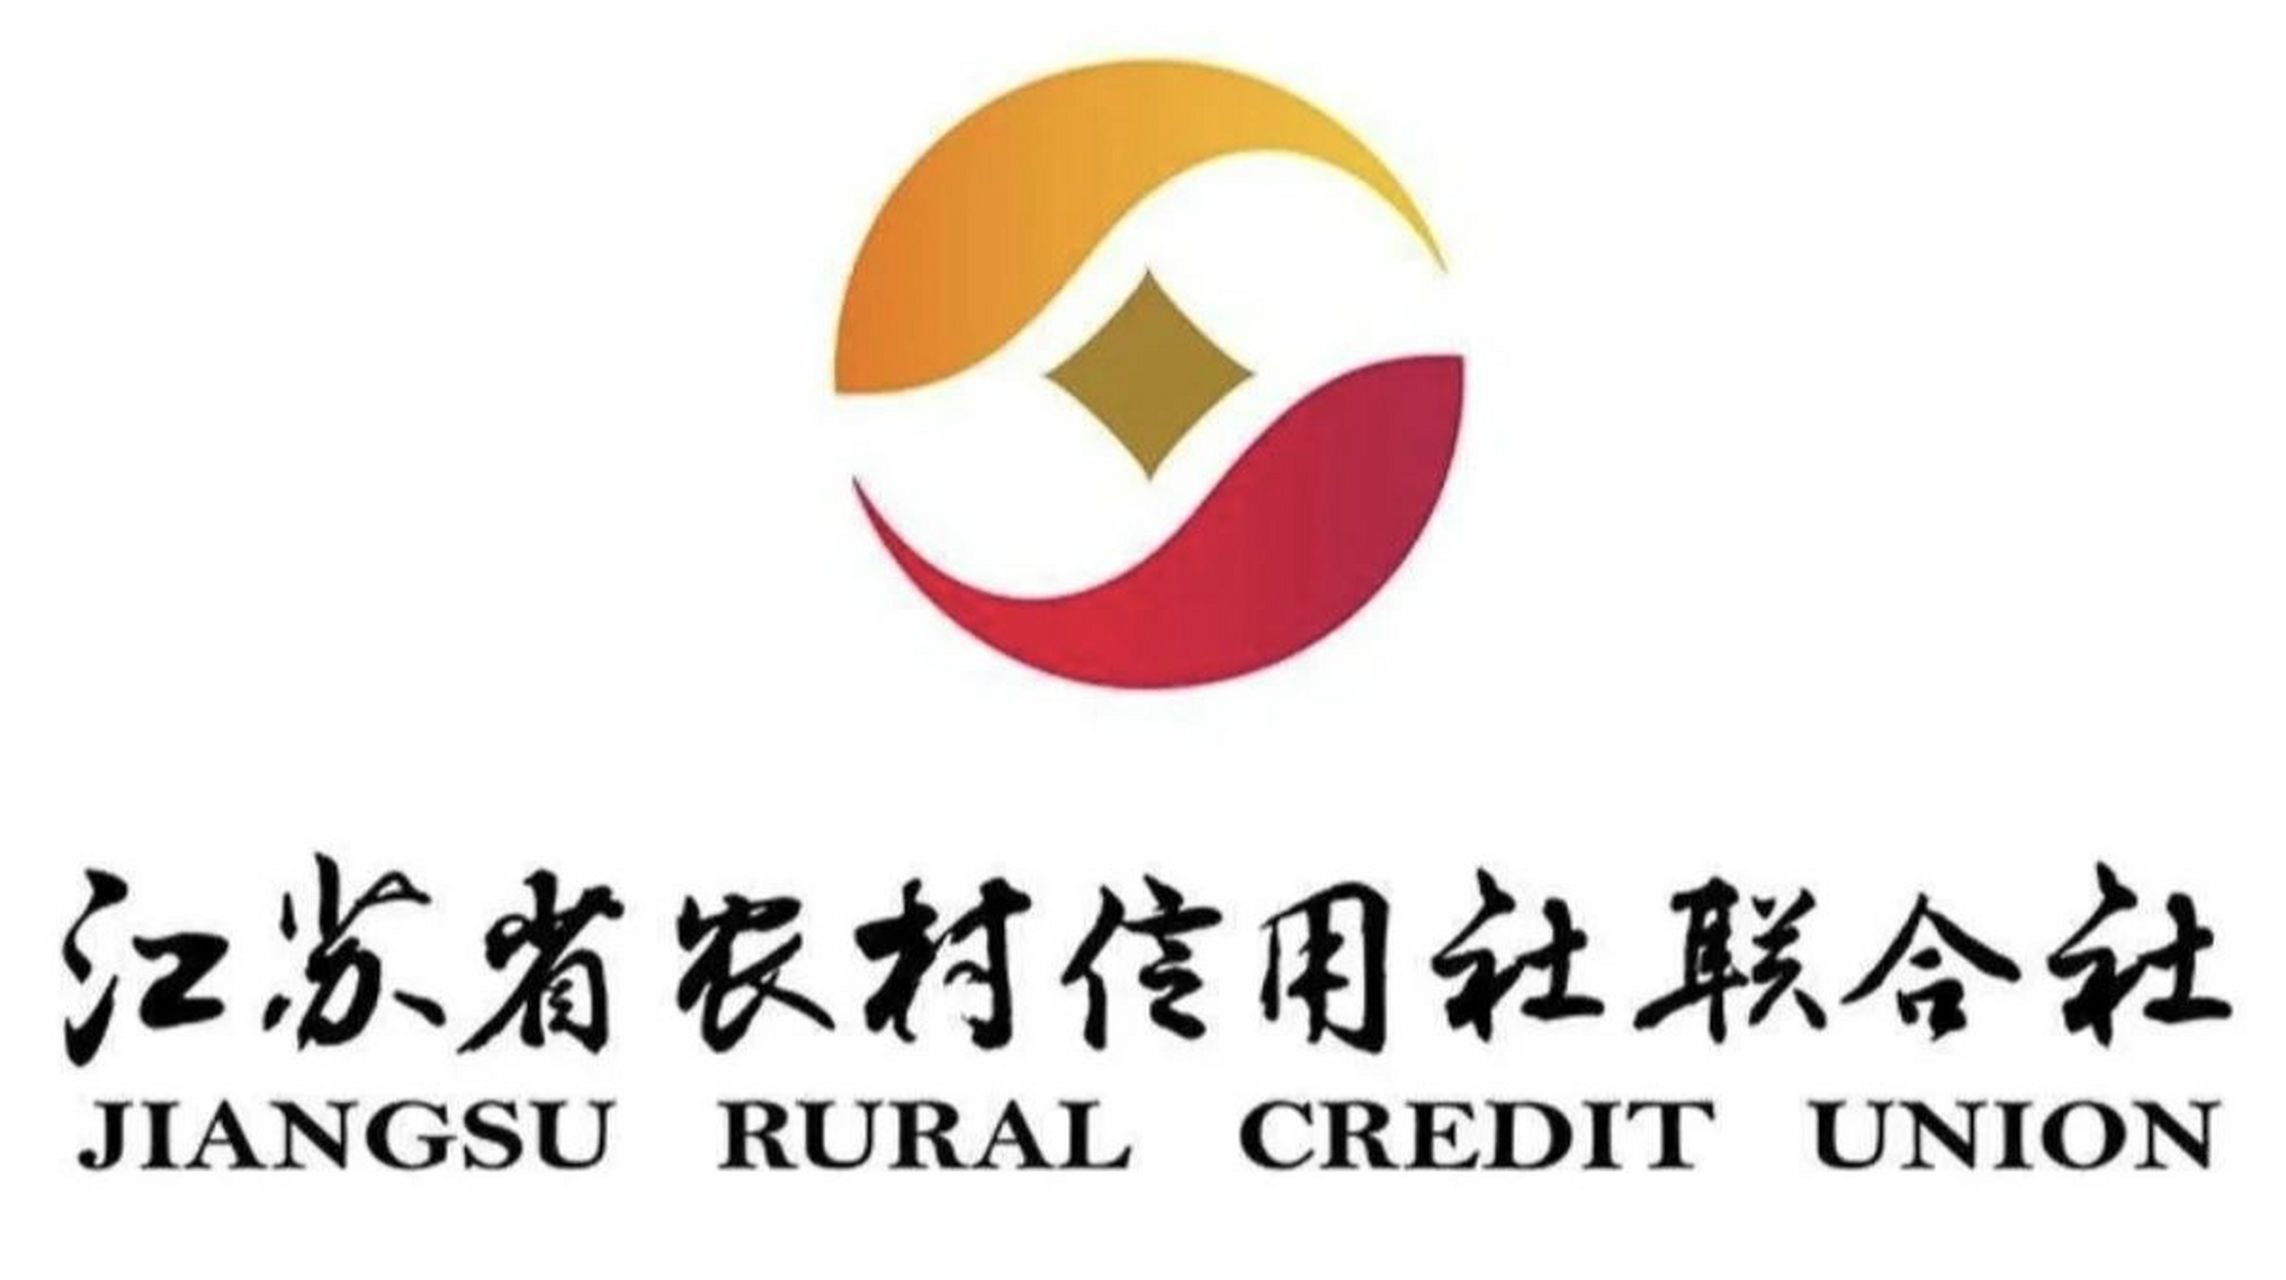 江苏农商银行标志图片